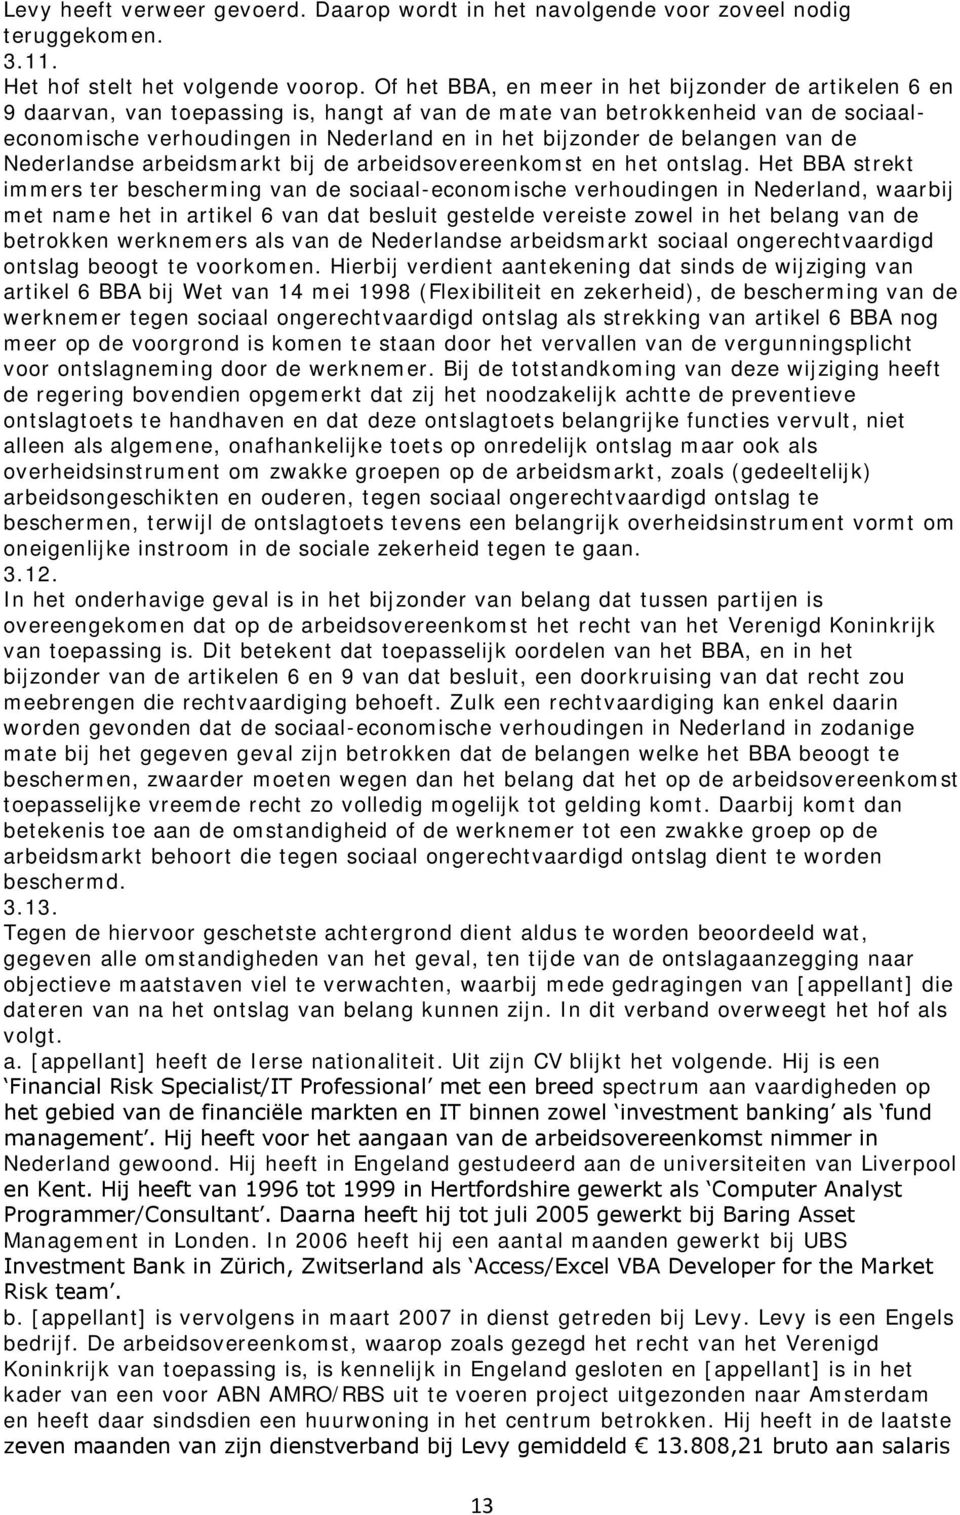 belangen van de Nederlandse arbeidsmarkt bij de arbeidsovereenkomst en het ontslag.